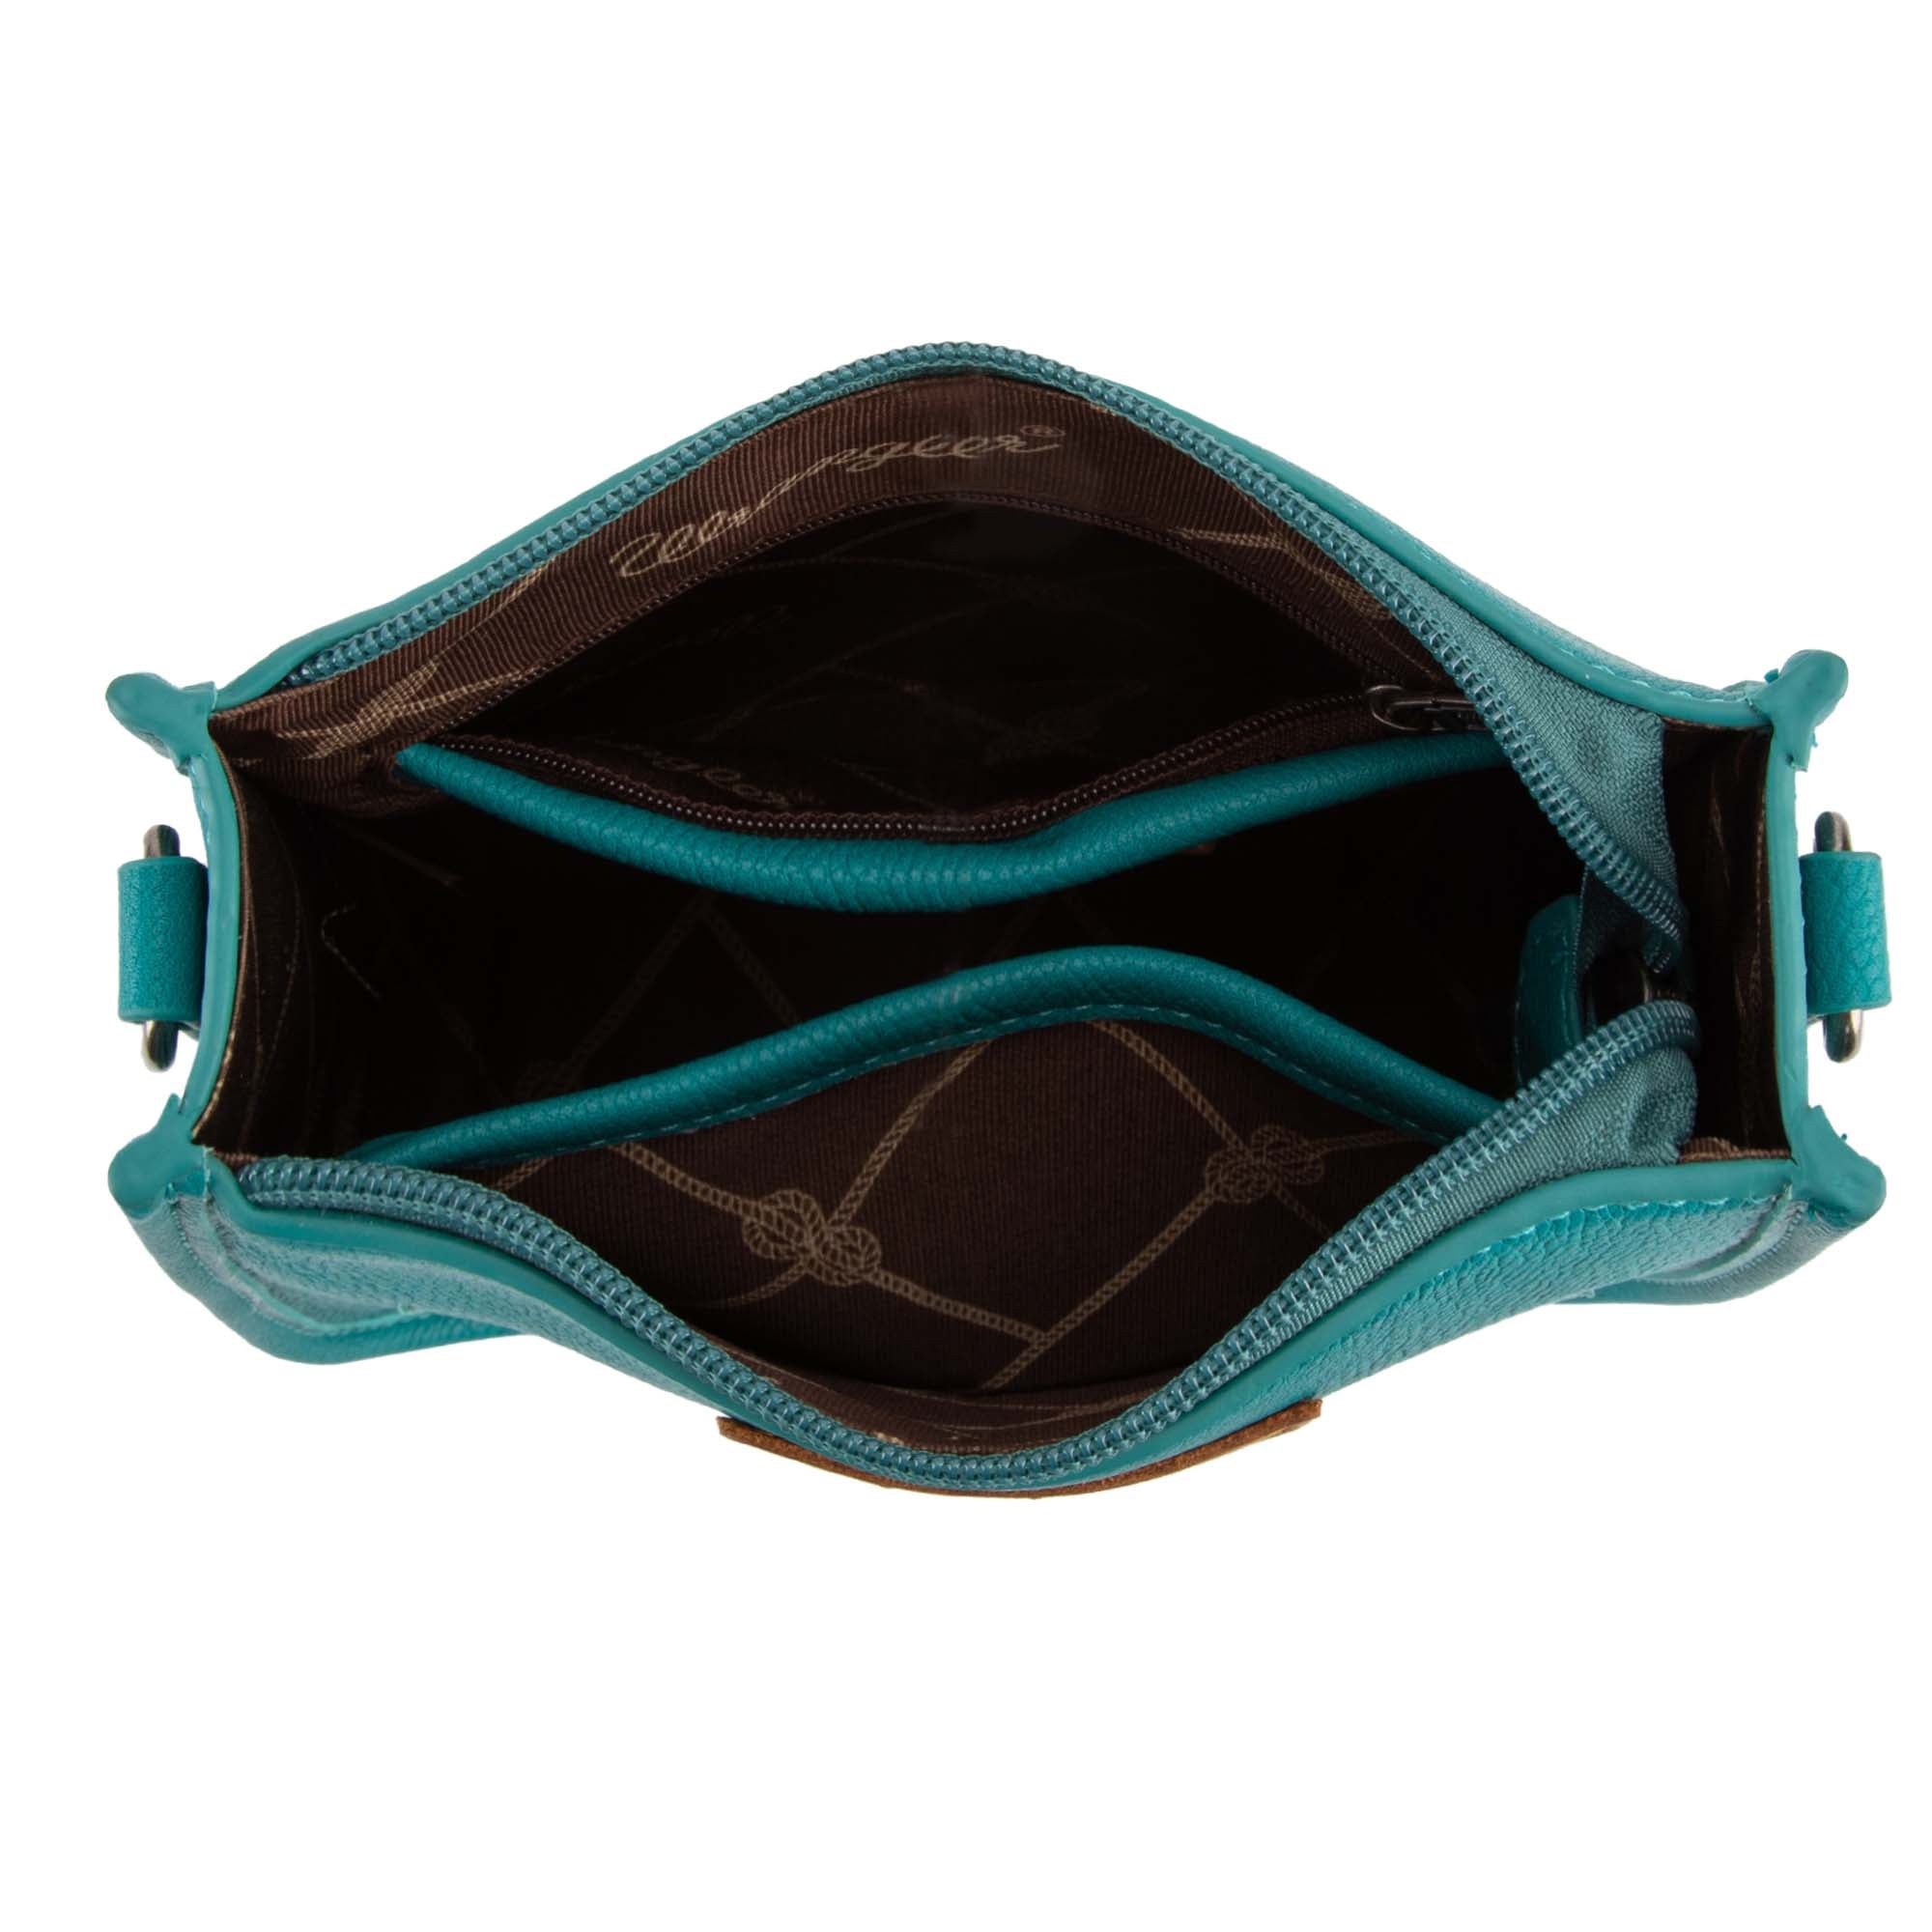 LUXURY LEATHER Womens Bag Fringe Turquoise Purse Crossbody Shoulder Stylish  Pack | eBay